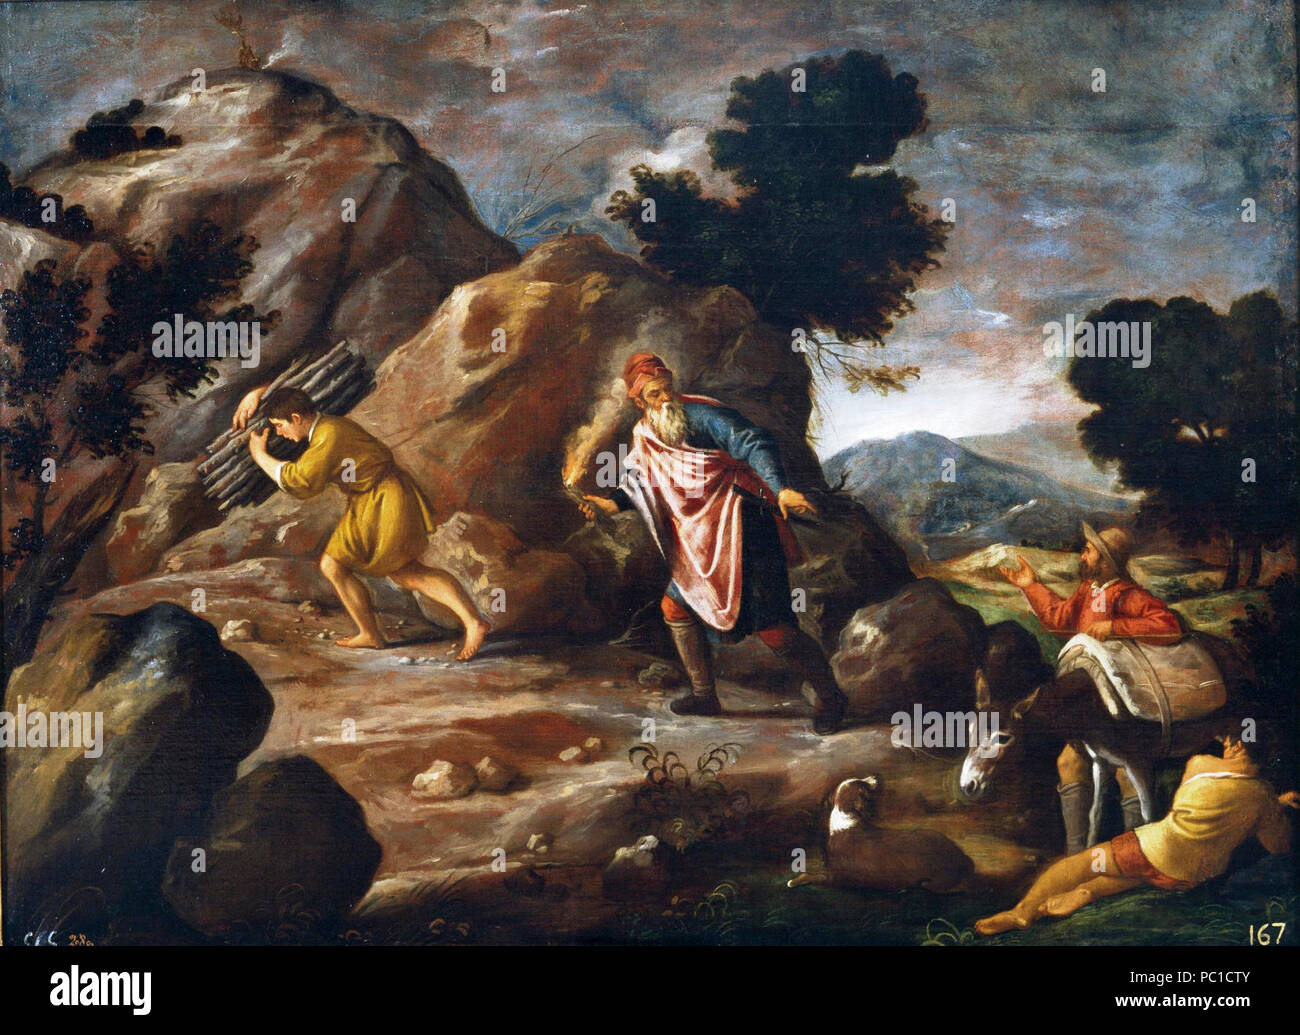 Abraham e Isaac camino del sacrificio, de Pedro de Orrente (Museo del Prado). Stock Photo